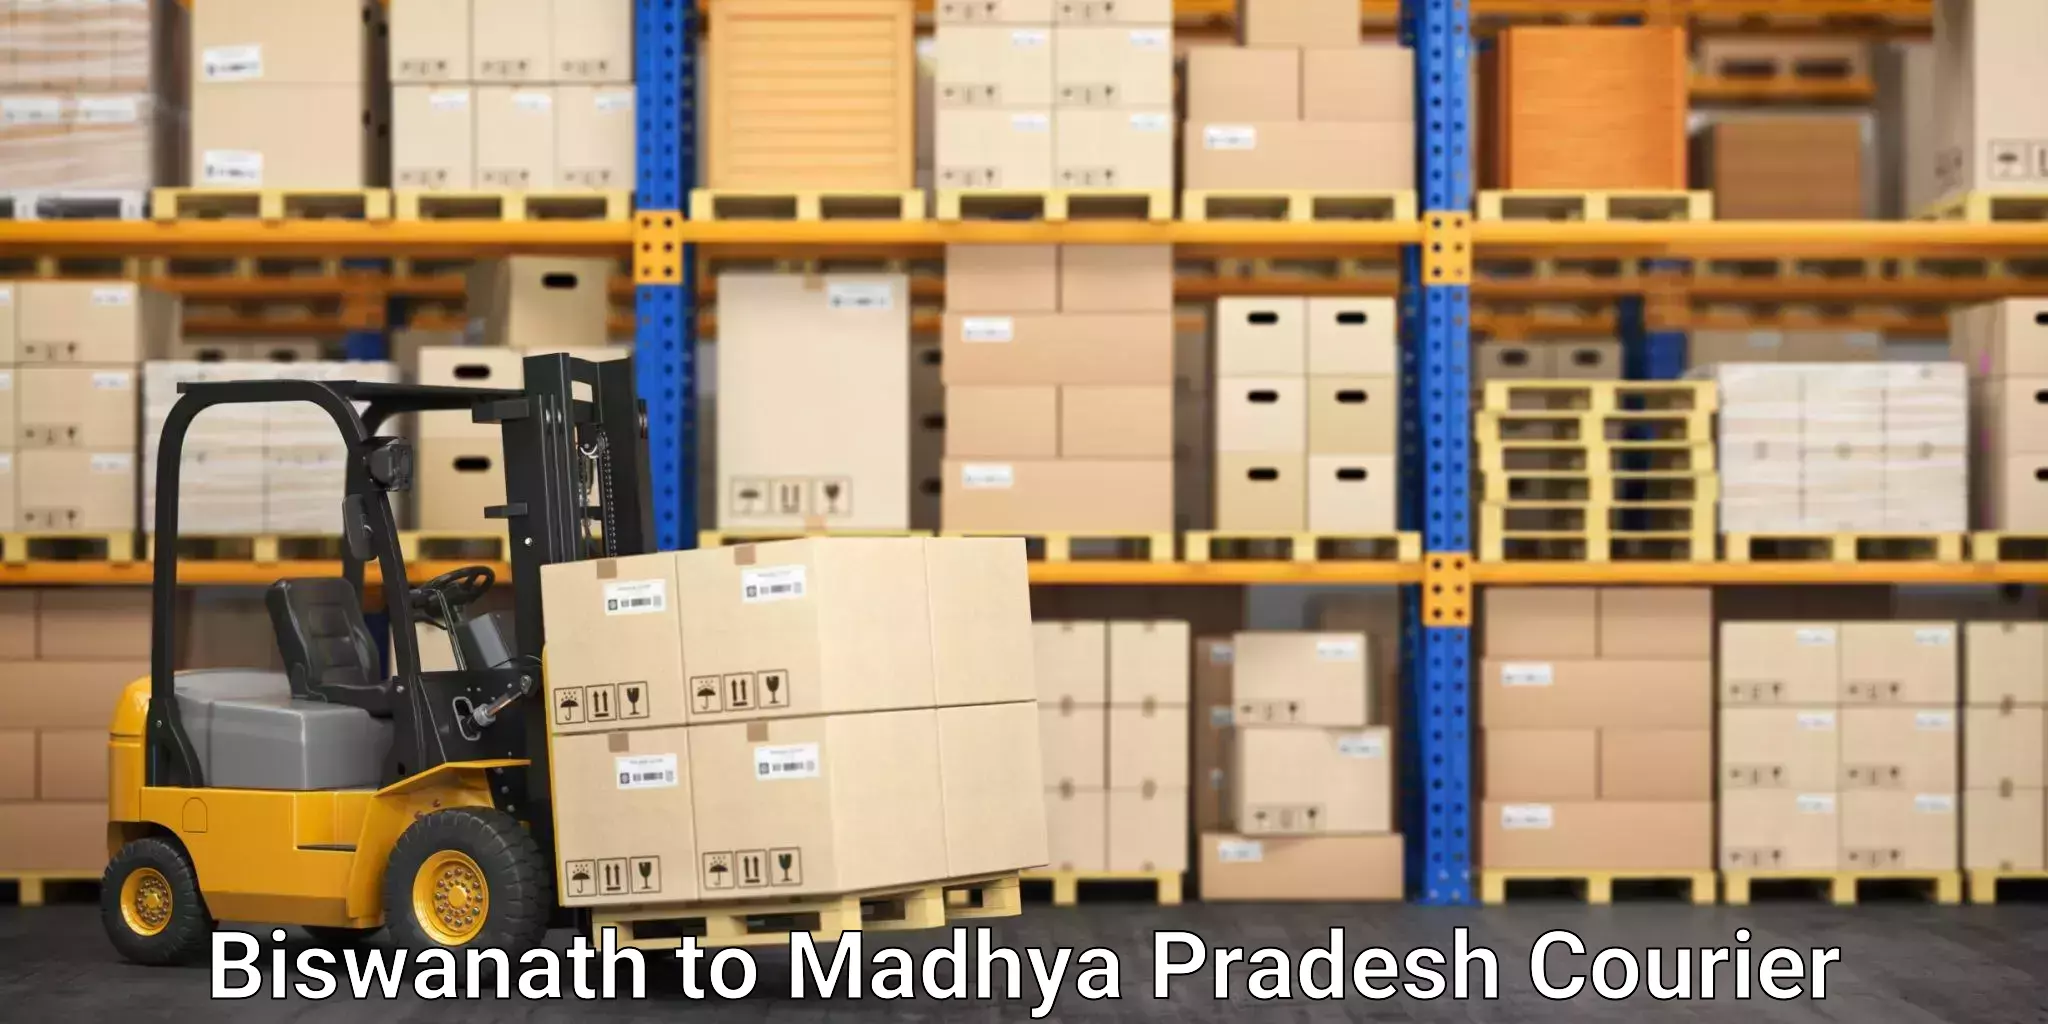 Domestic courier Biswanath to Madhya Pradesh